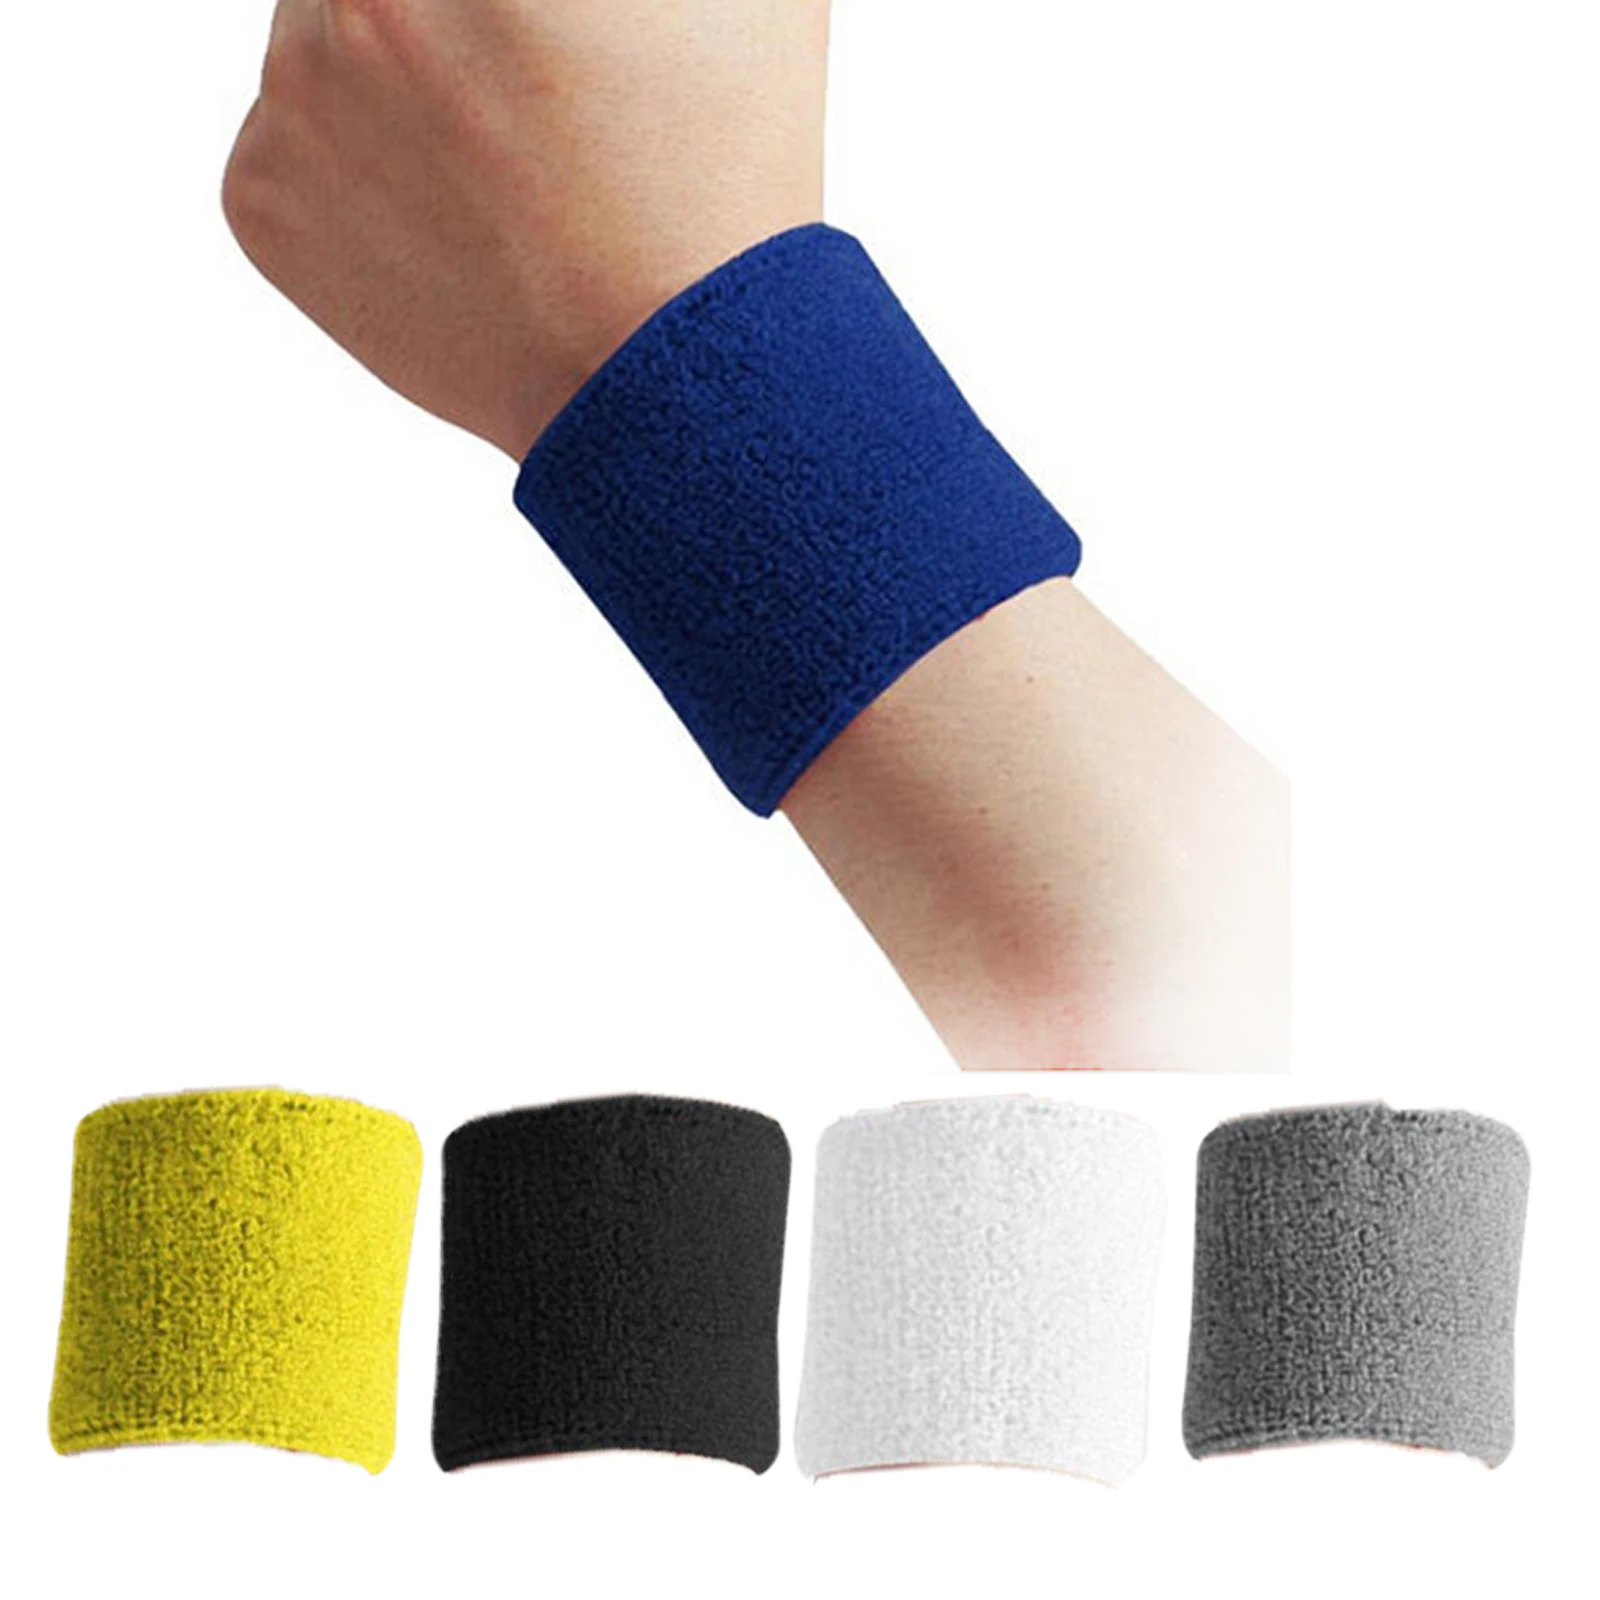 

1PCS Cotton Wristbands Sport Sweatband Hand Band Sweat Wrist Support Brace Wraps Guards Gym Volleyball Basketball